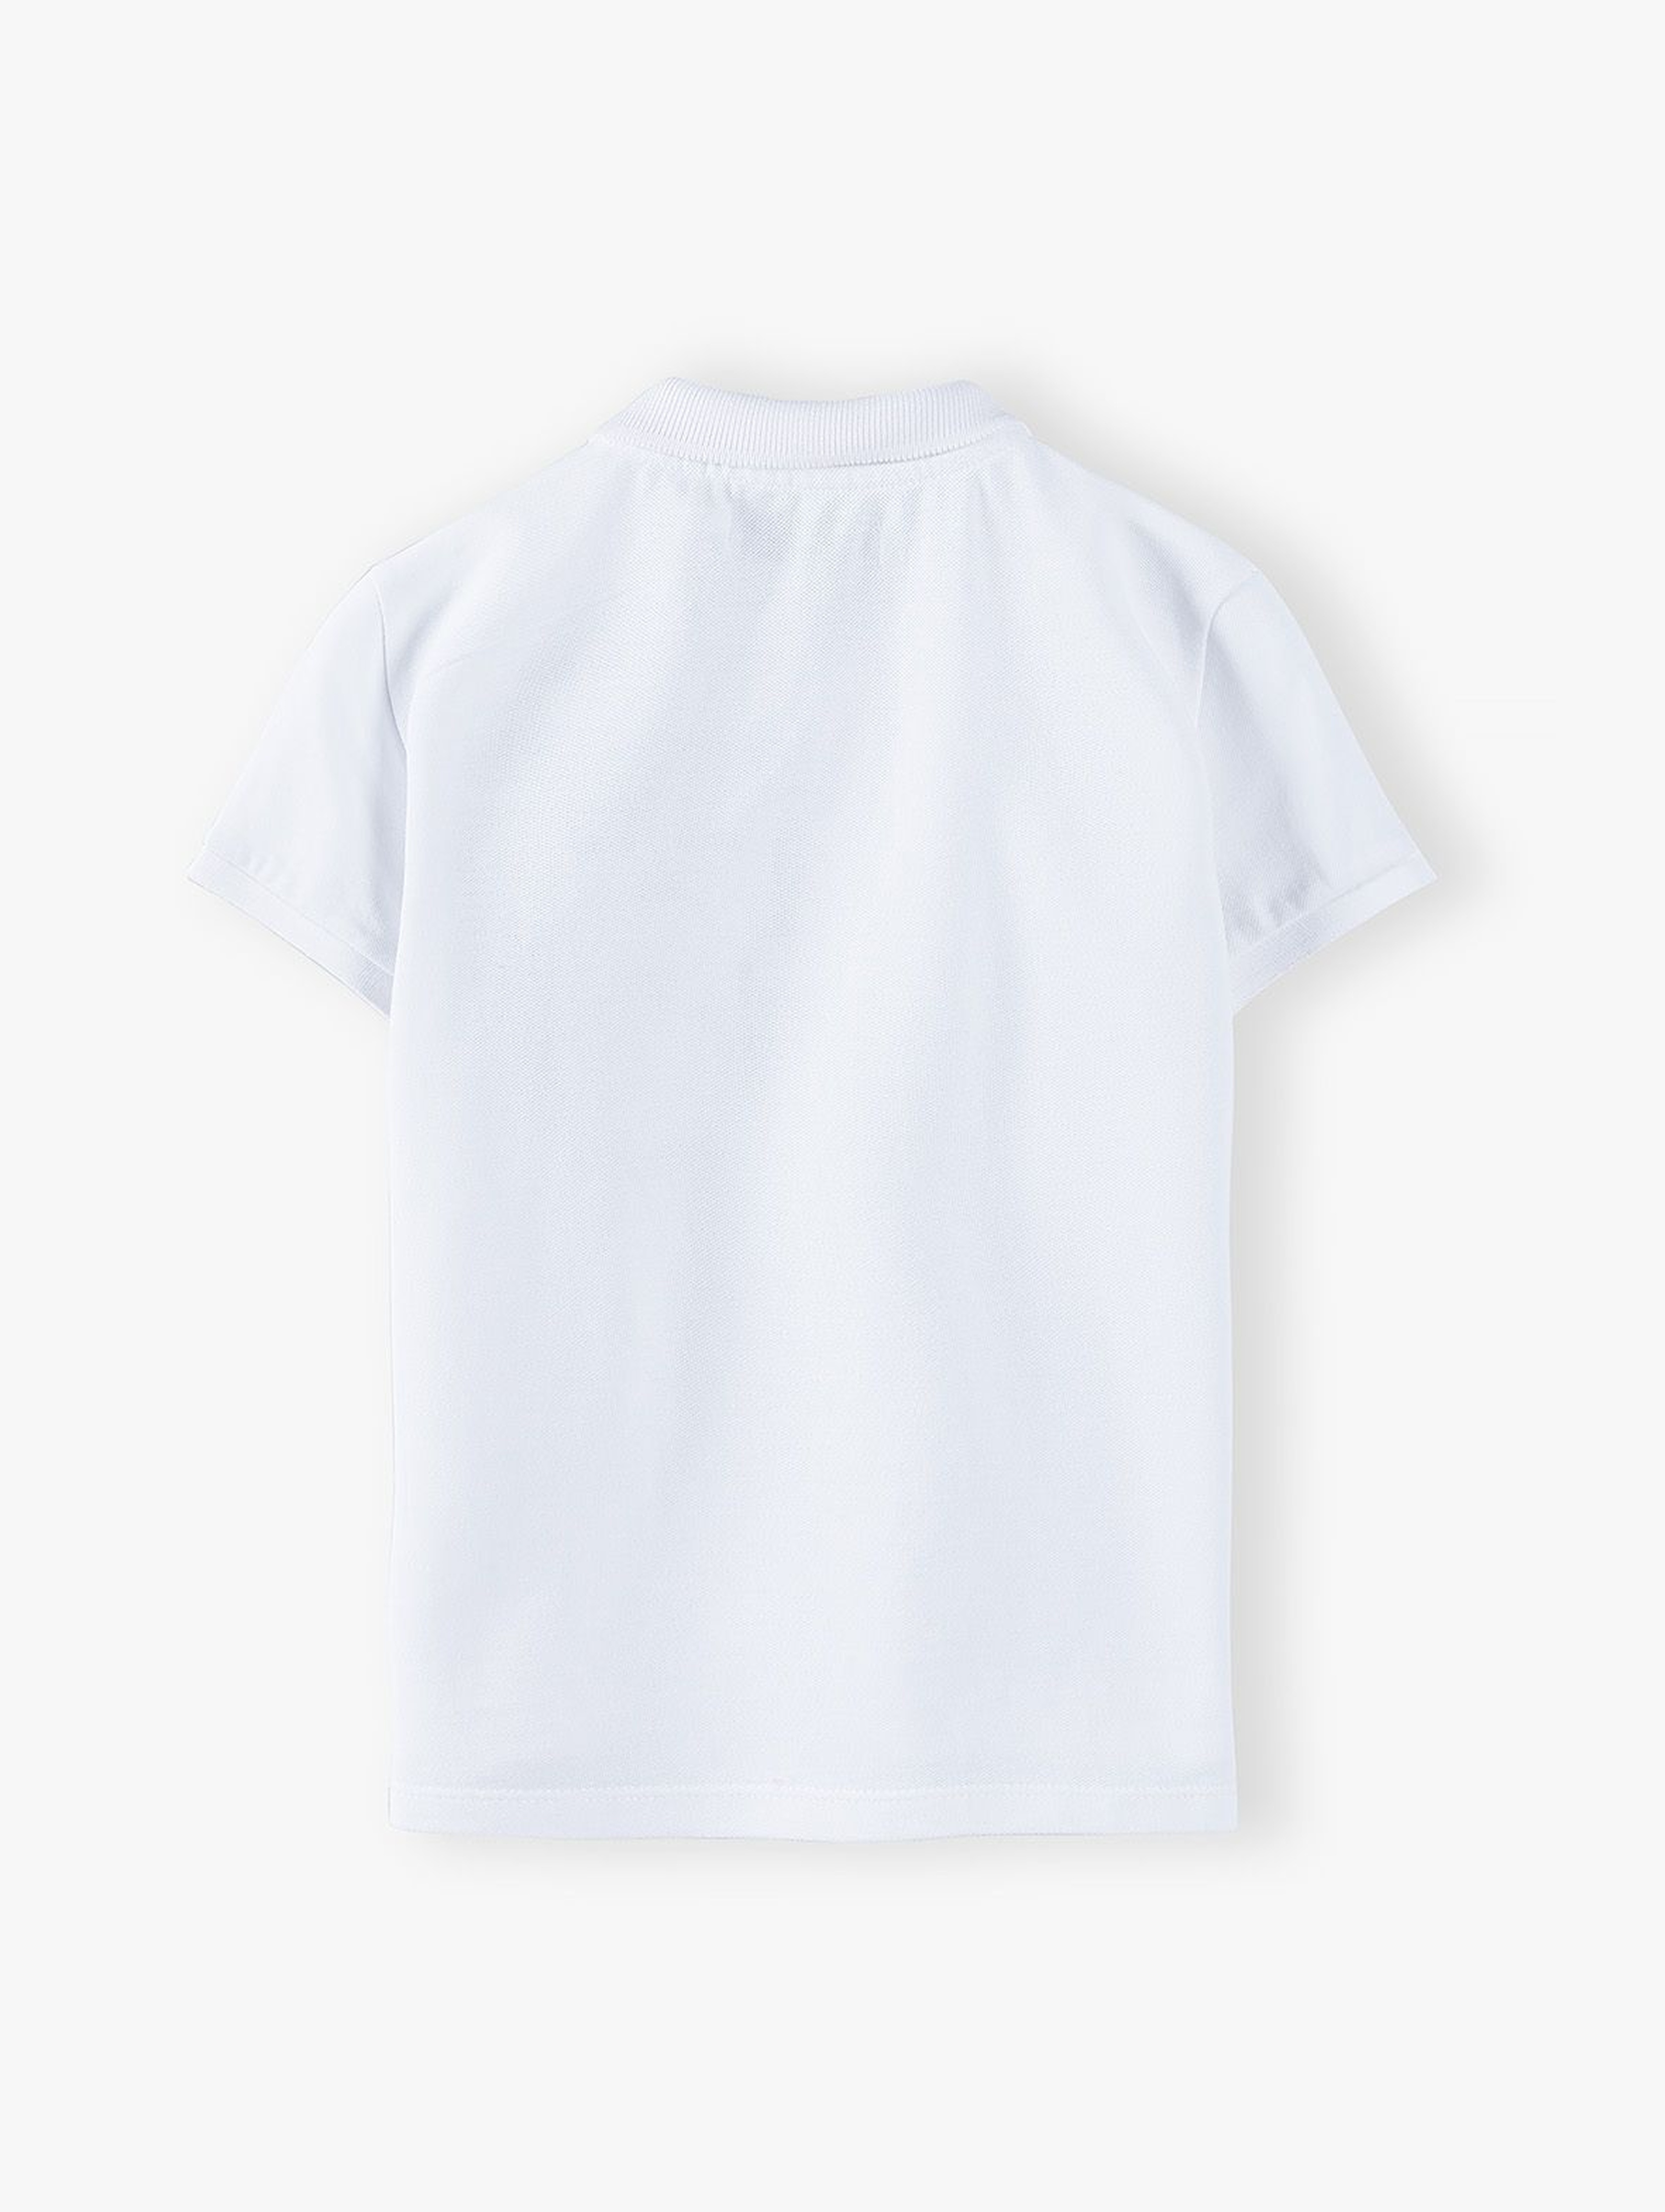 T-shirt chłopięcy bawełniany z kołnierzykiem -biały